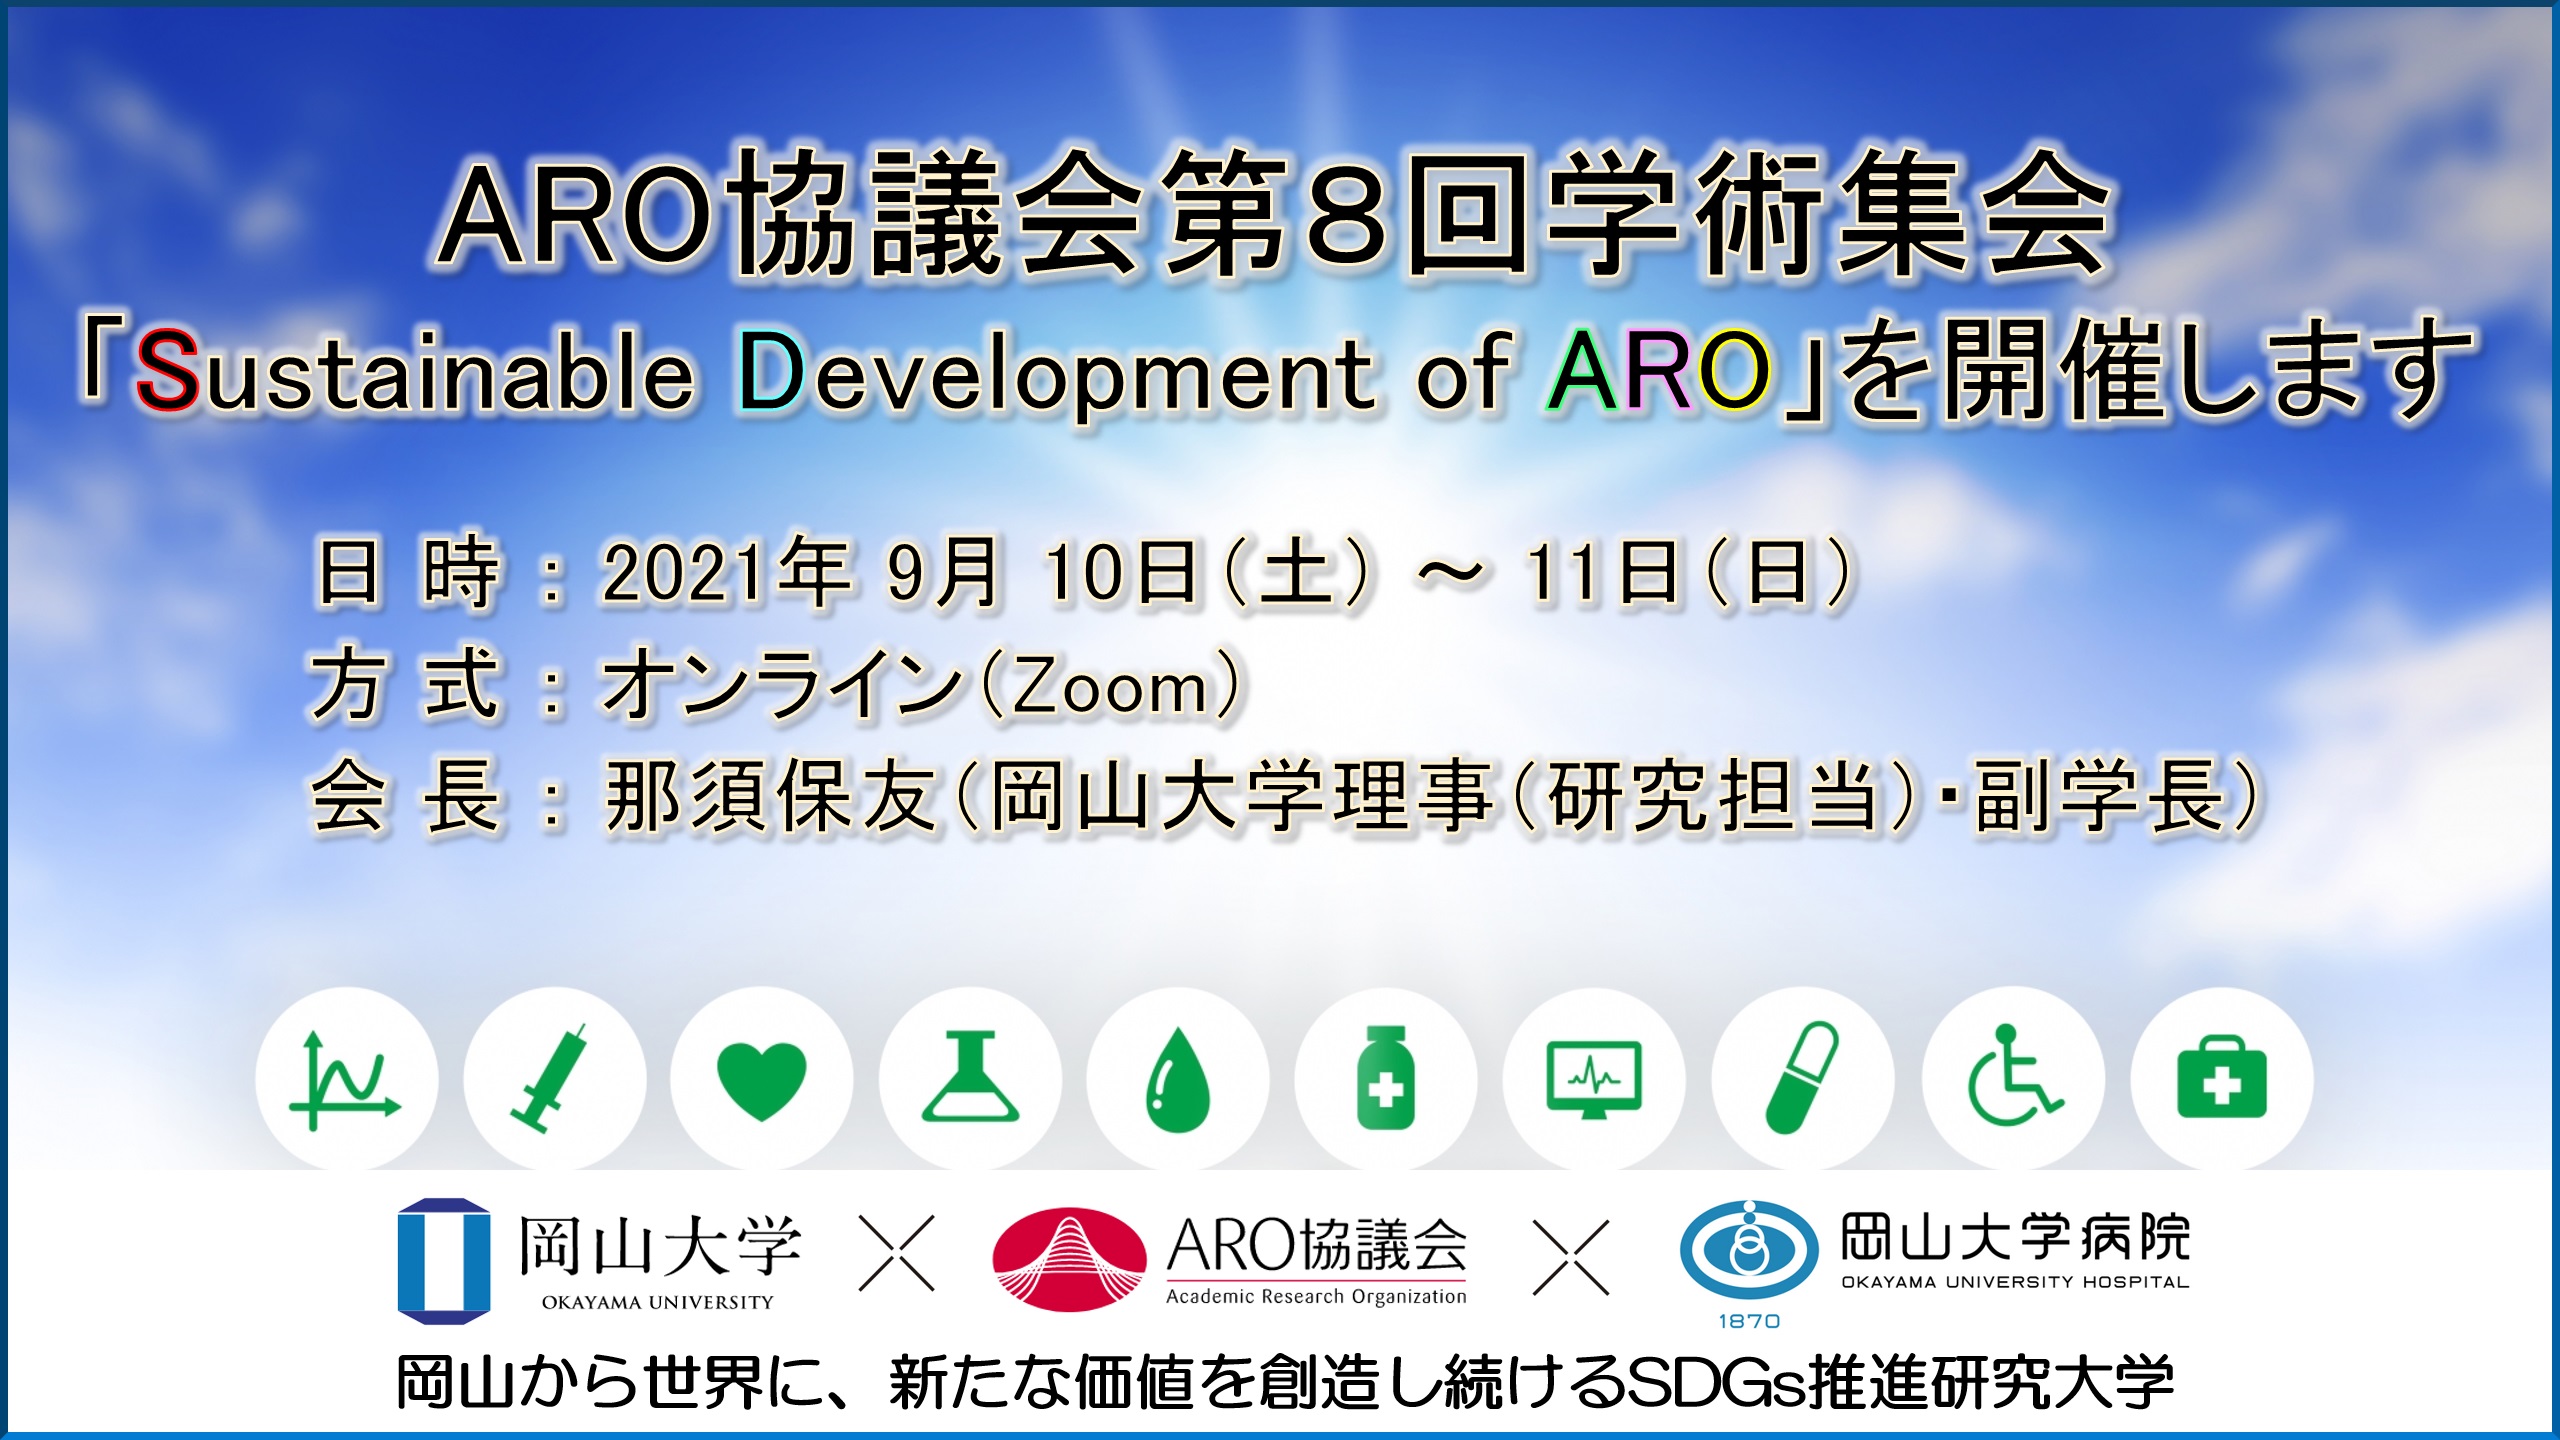 【岡山大学 x ARO協議会】ARO協議会第8回学術集会「Sustainable Development of ARO」を開催します〔9/10～11、オンライン〕のサブ画像1